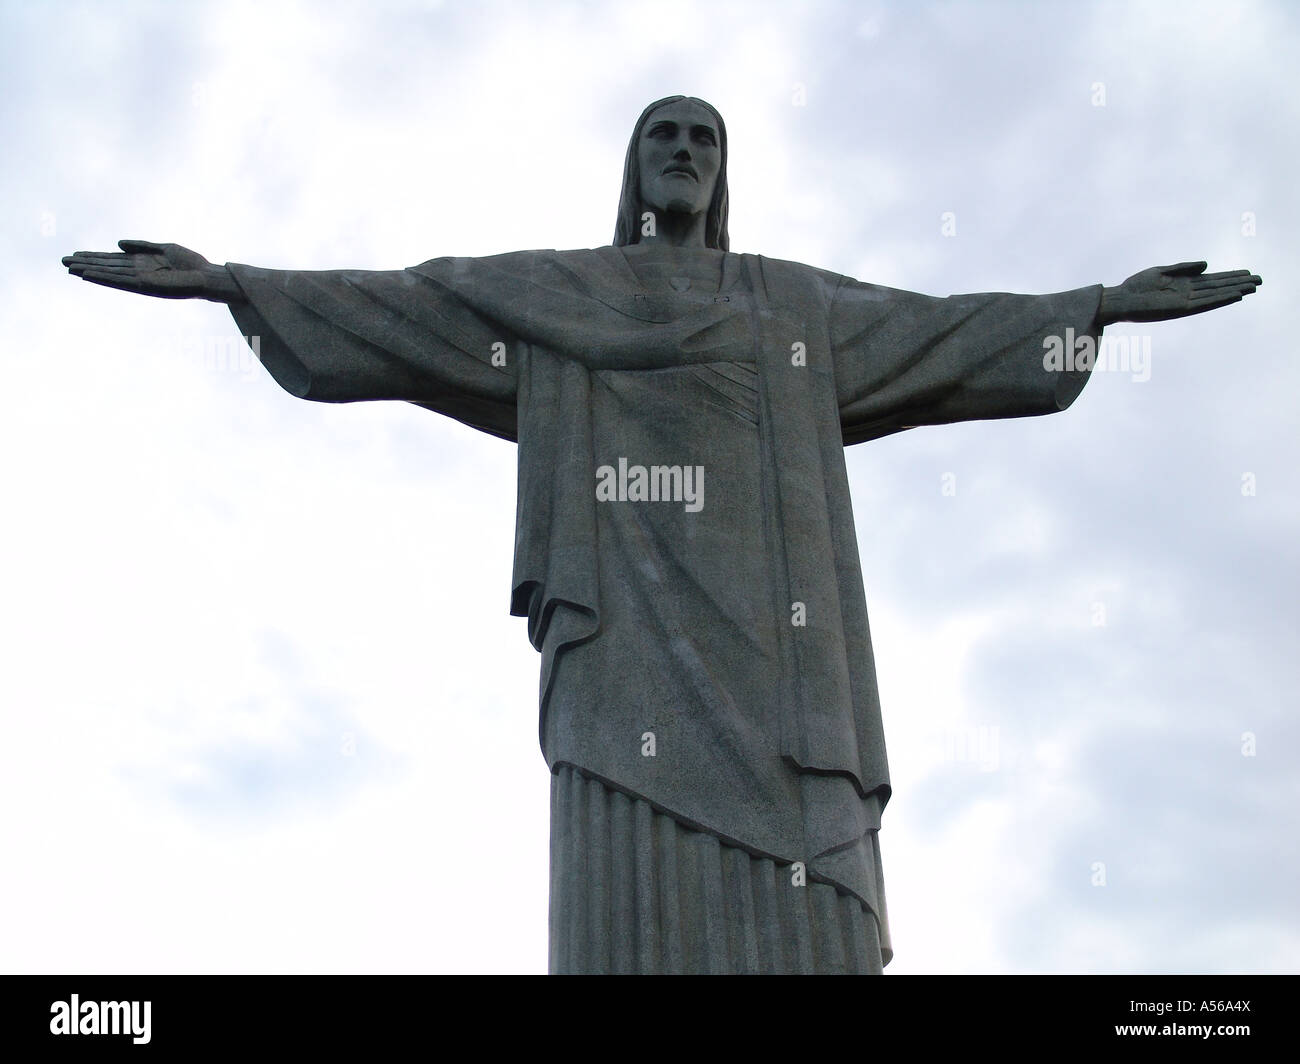 Painet iy8162 la estatua del Cristo Redentor de Brasil 2005 país nación en desarrollo menos desarrollados económicamente emergentes de cultura Foto de stock